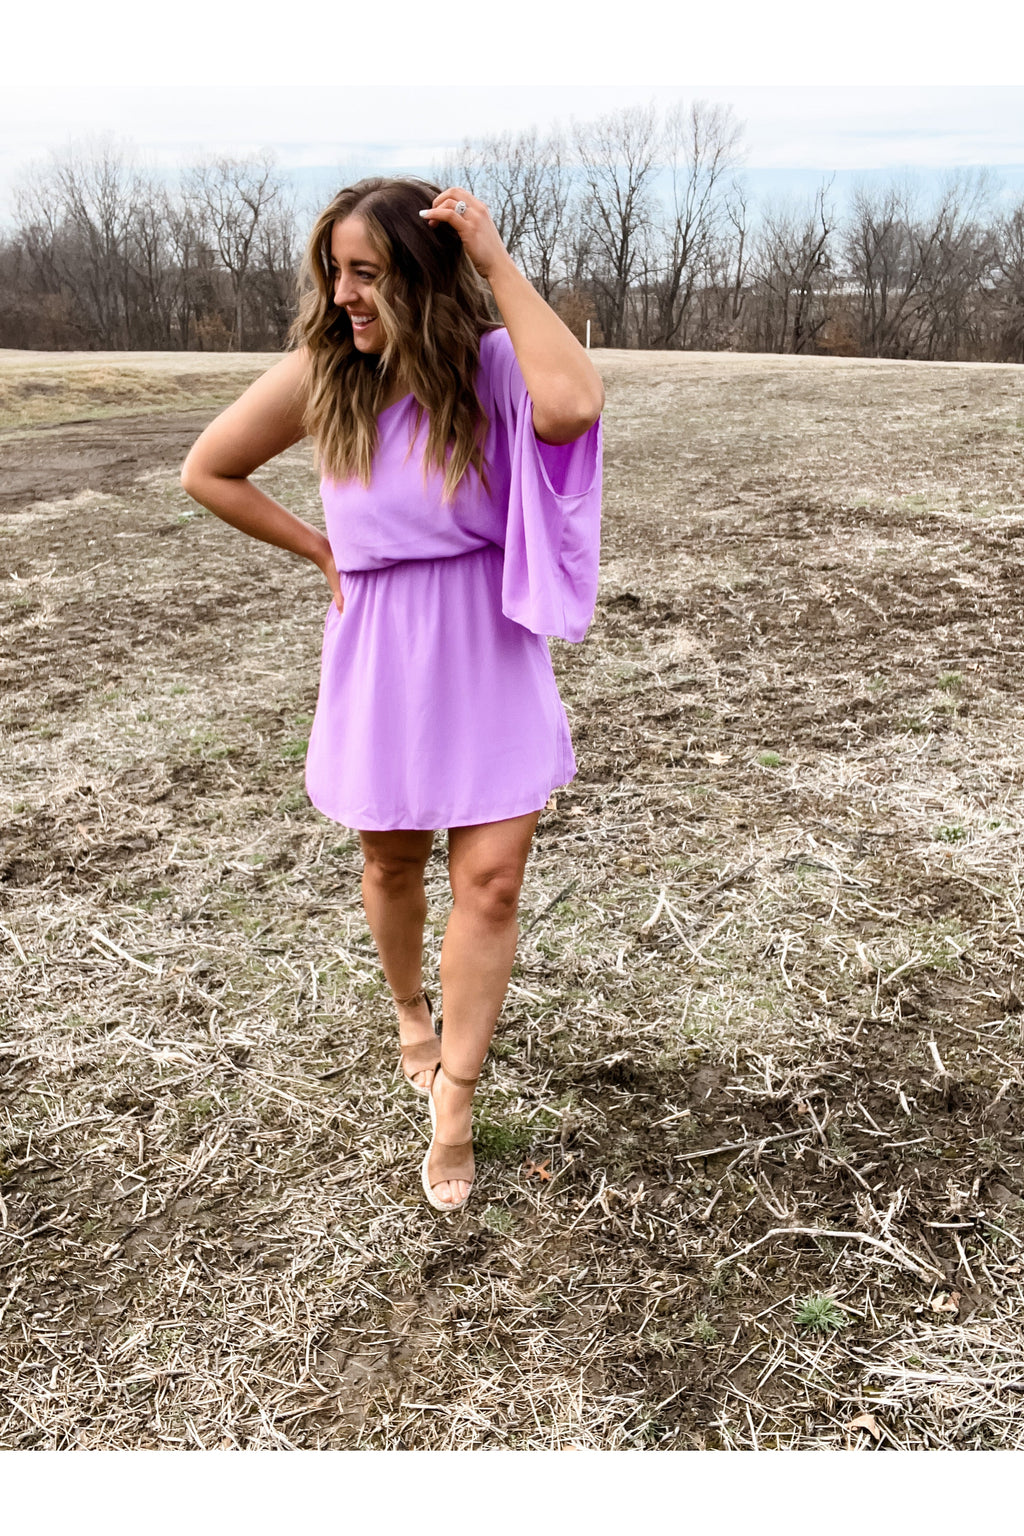 Soft Smiles- Lavender One Shoulder Dress